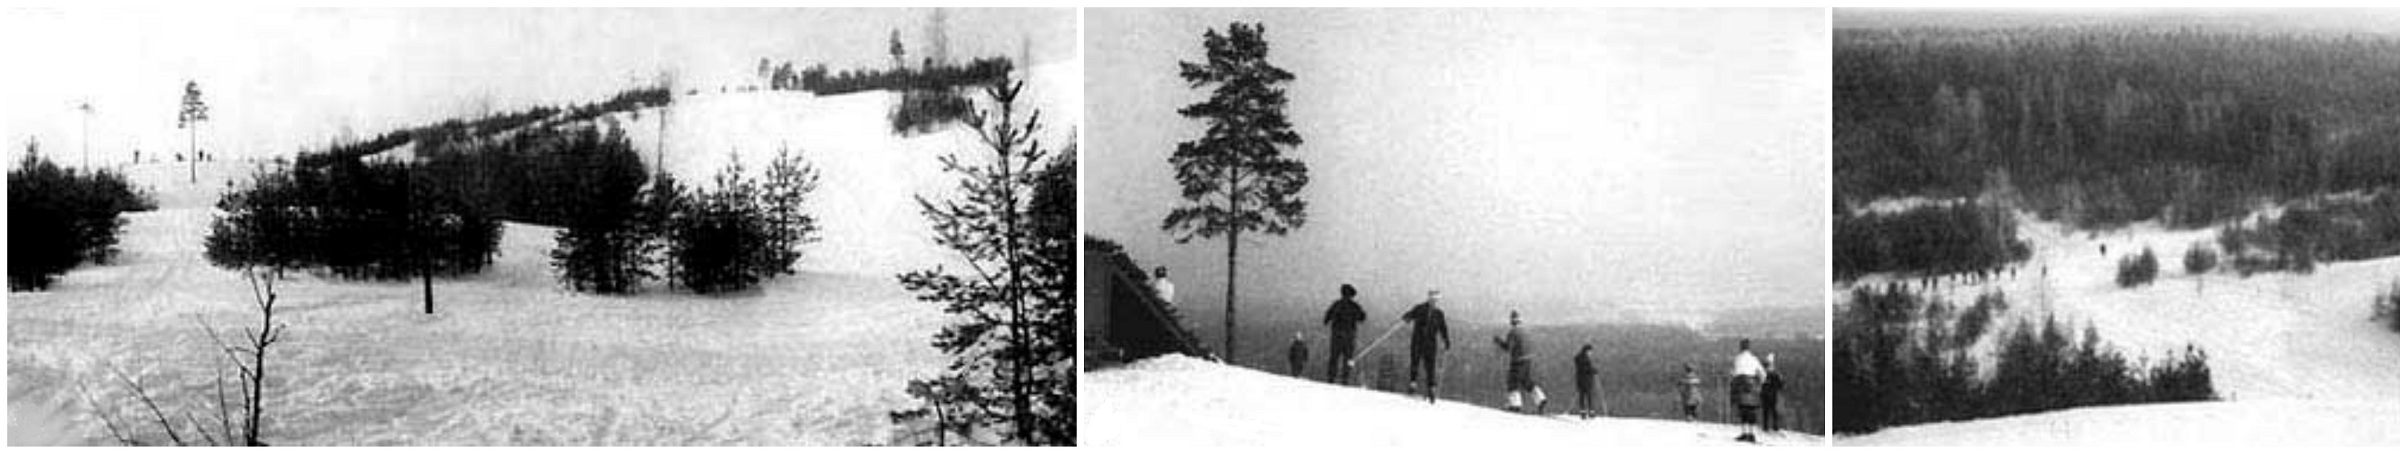 Хётёнмяки 1984г. лыжный центр с подъемником.jpg